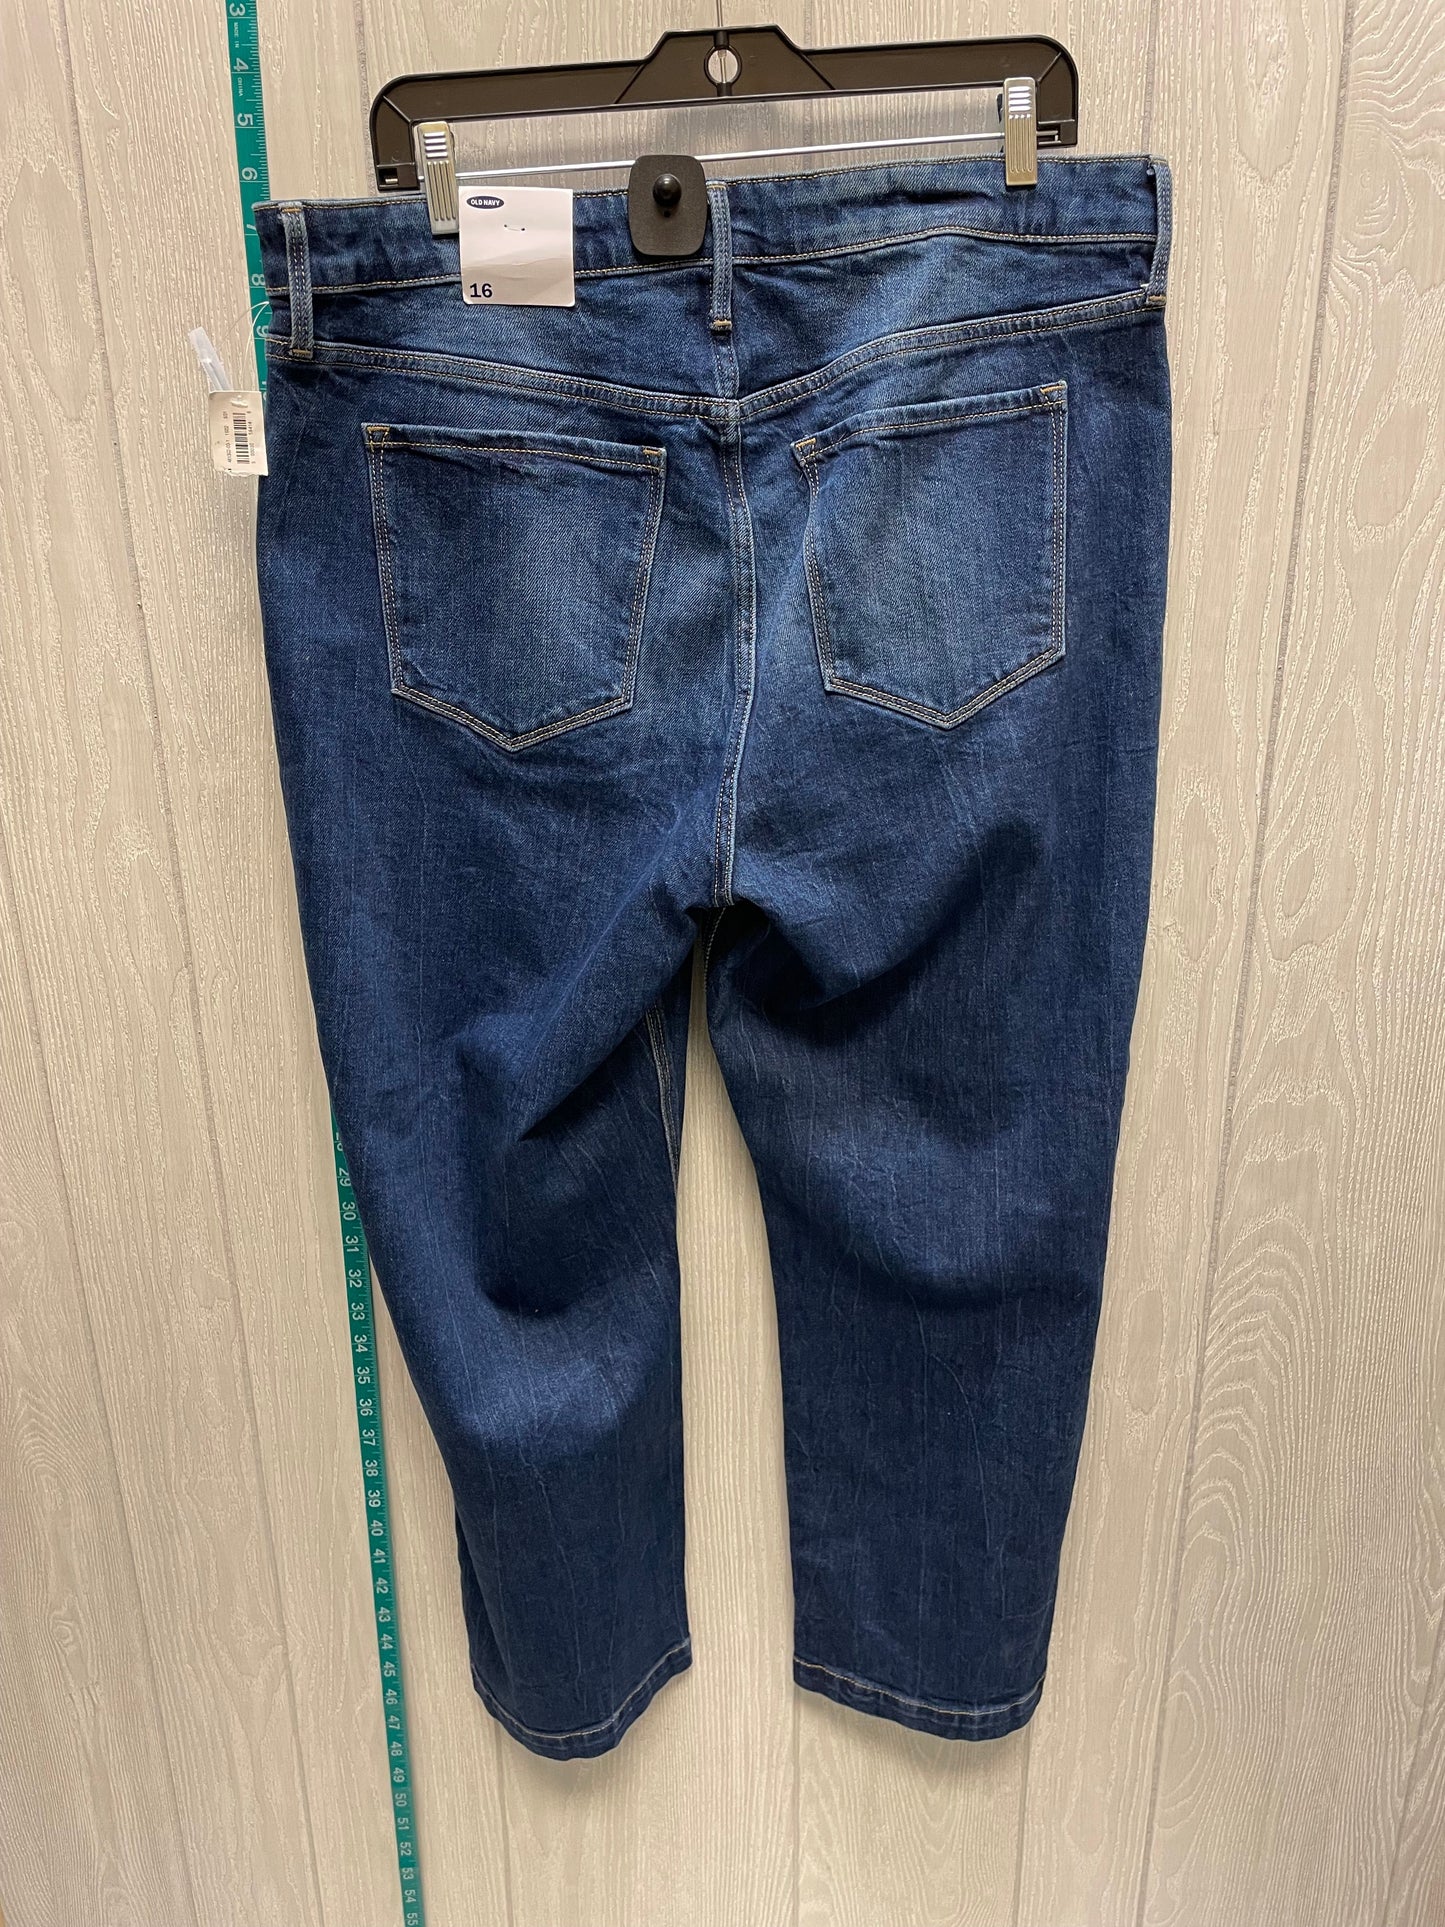 Blue Denim Jeans Boyfriend Old Navy, Size 16